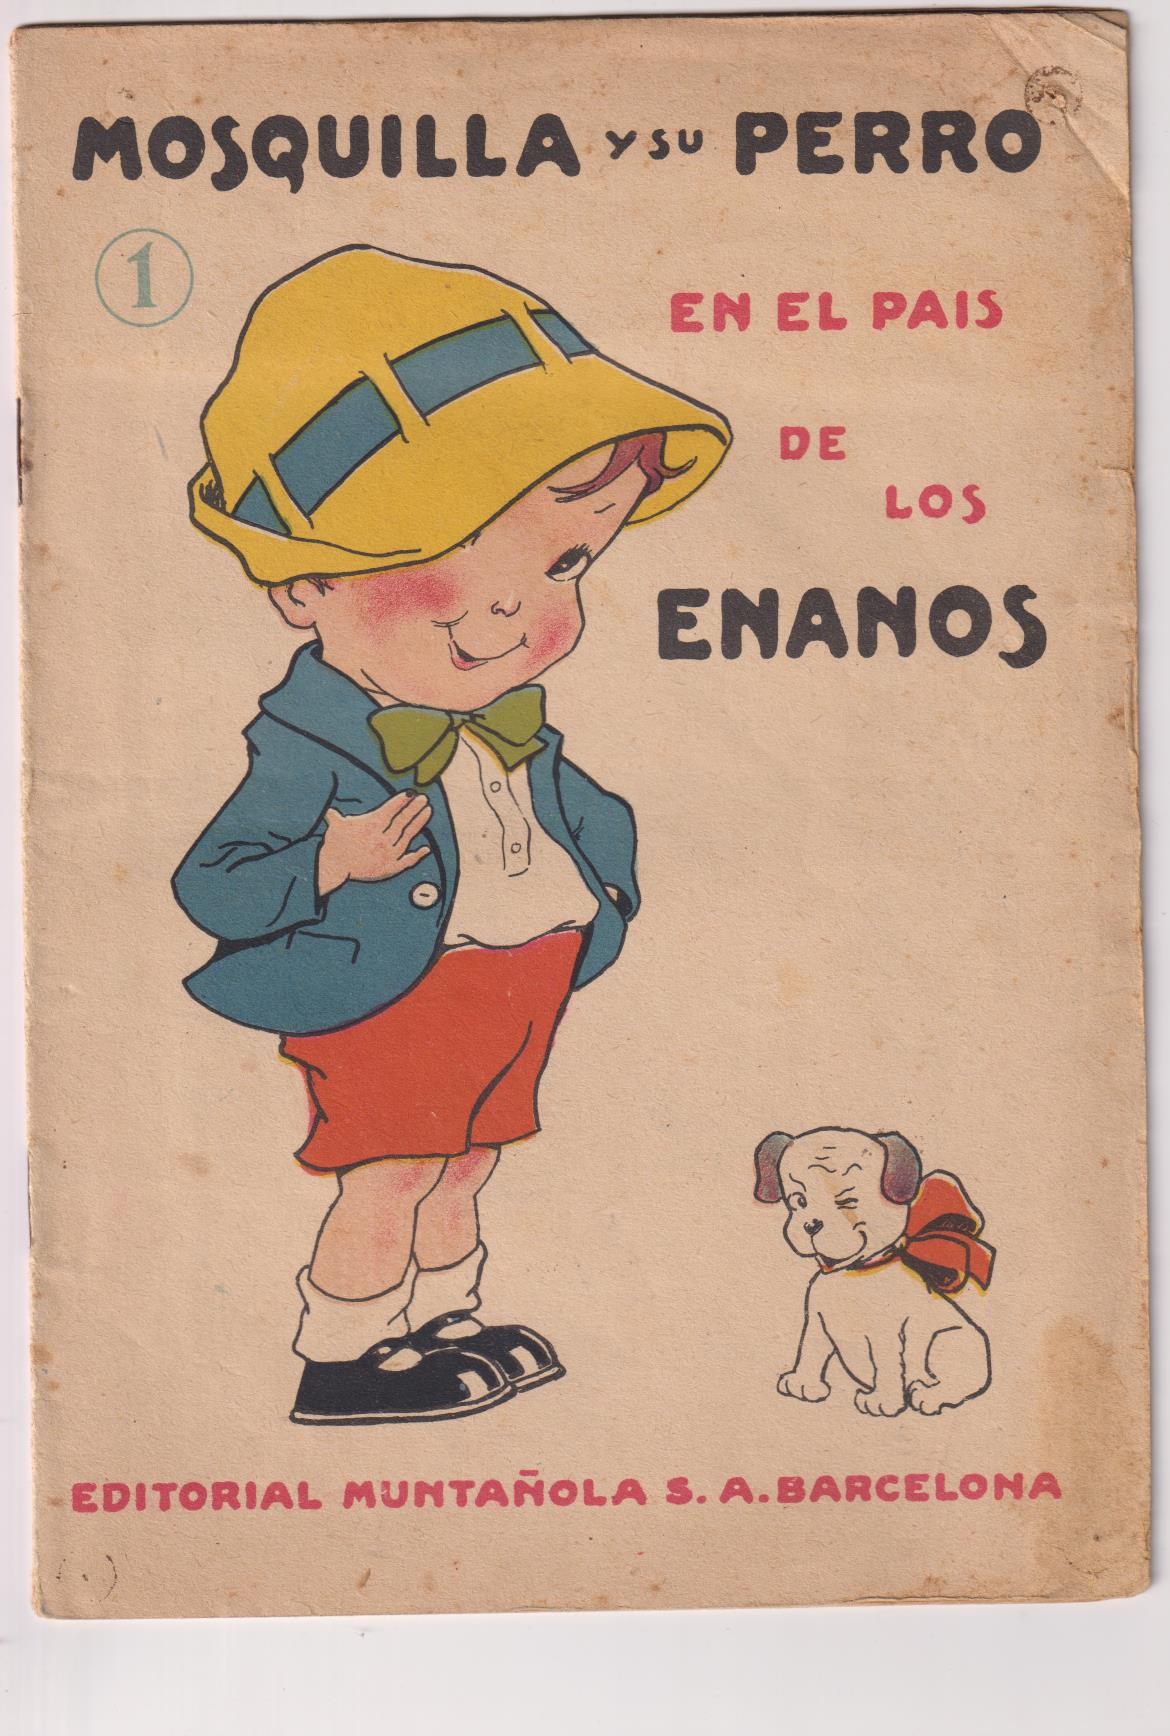 Mosquilla y su perro nº 1. En el País de los Enanos por Maese Antoni. Ilustraciones de Freixas